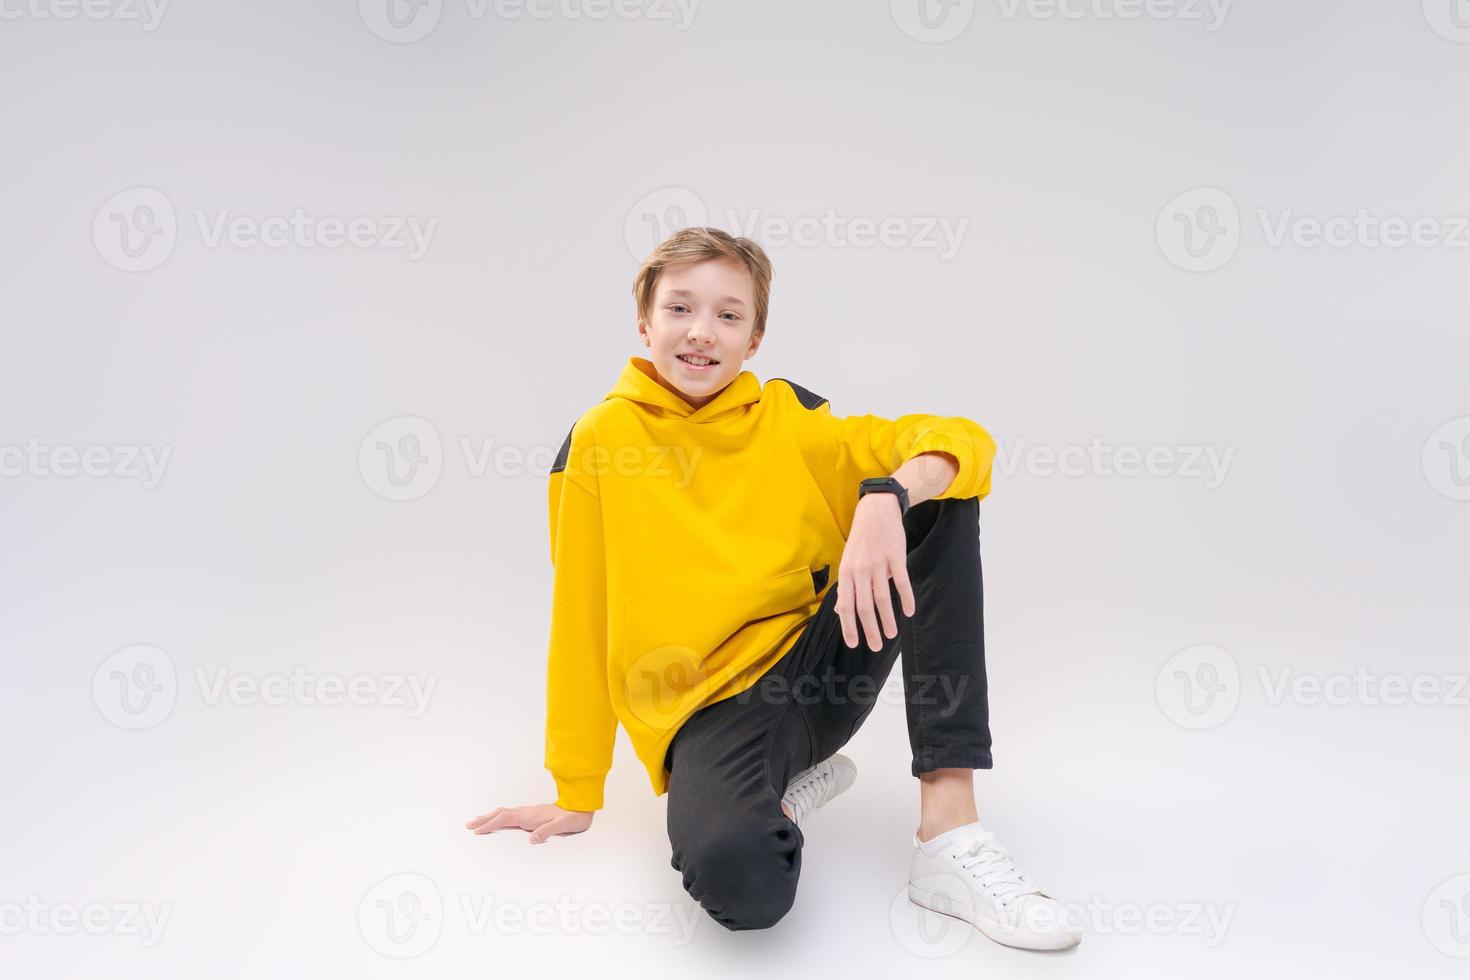 giovane ragazzo sorridente felice bello in jeans neri, giallo chiaro foto